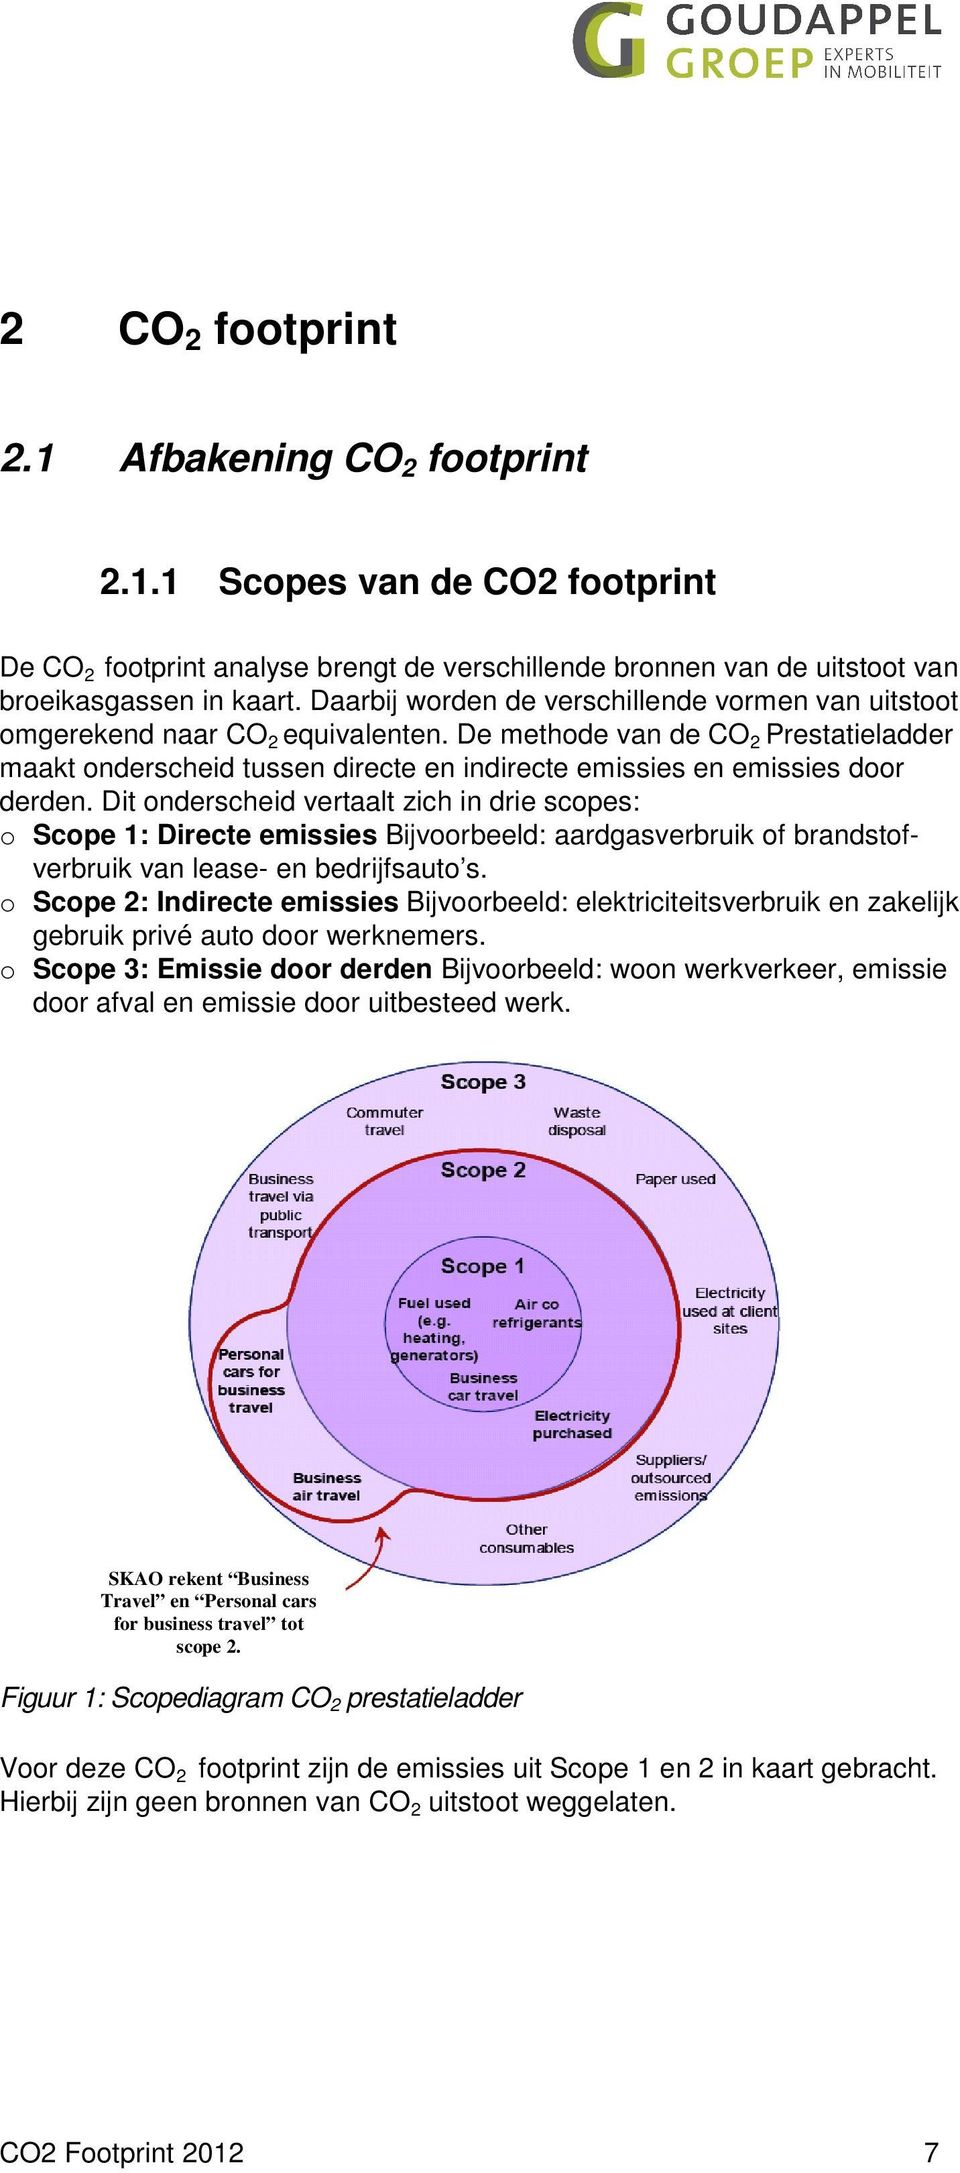 De methode van de CO 2 Prestatieladder maakt onderscheid tussen directe en indirecte emissies en emissies door derden.